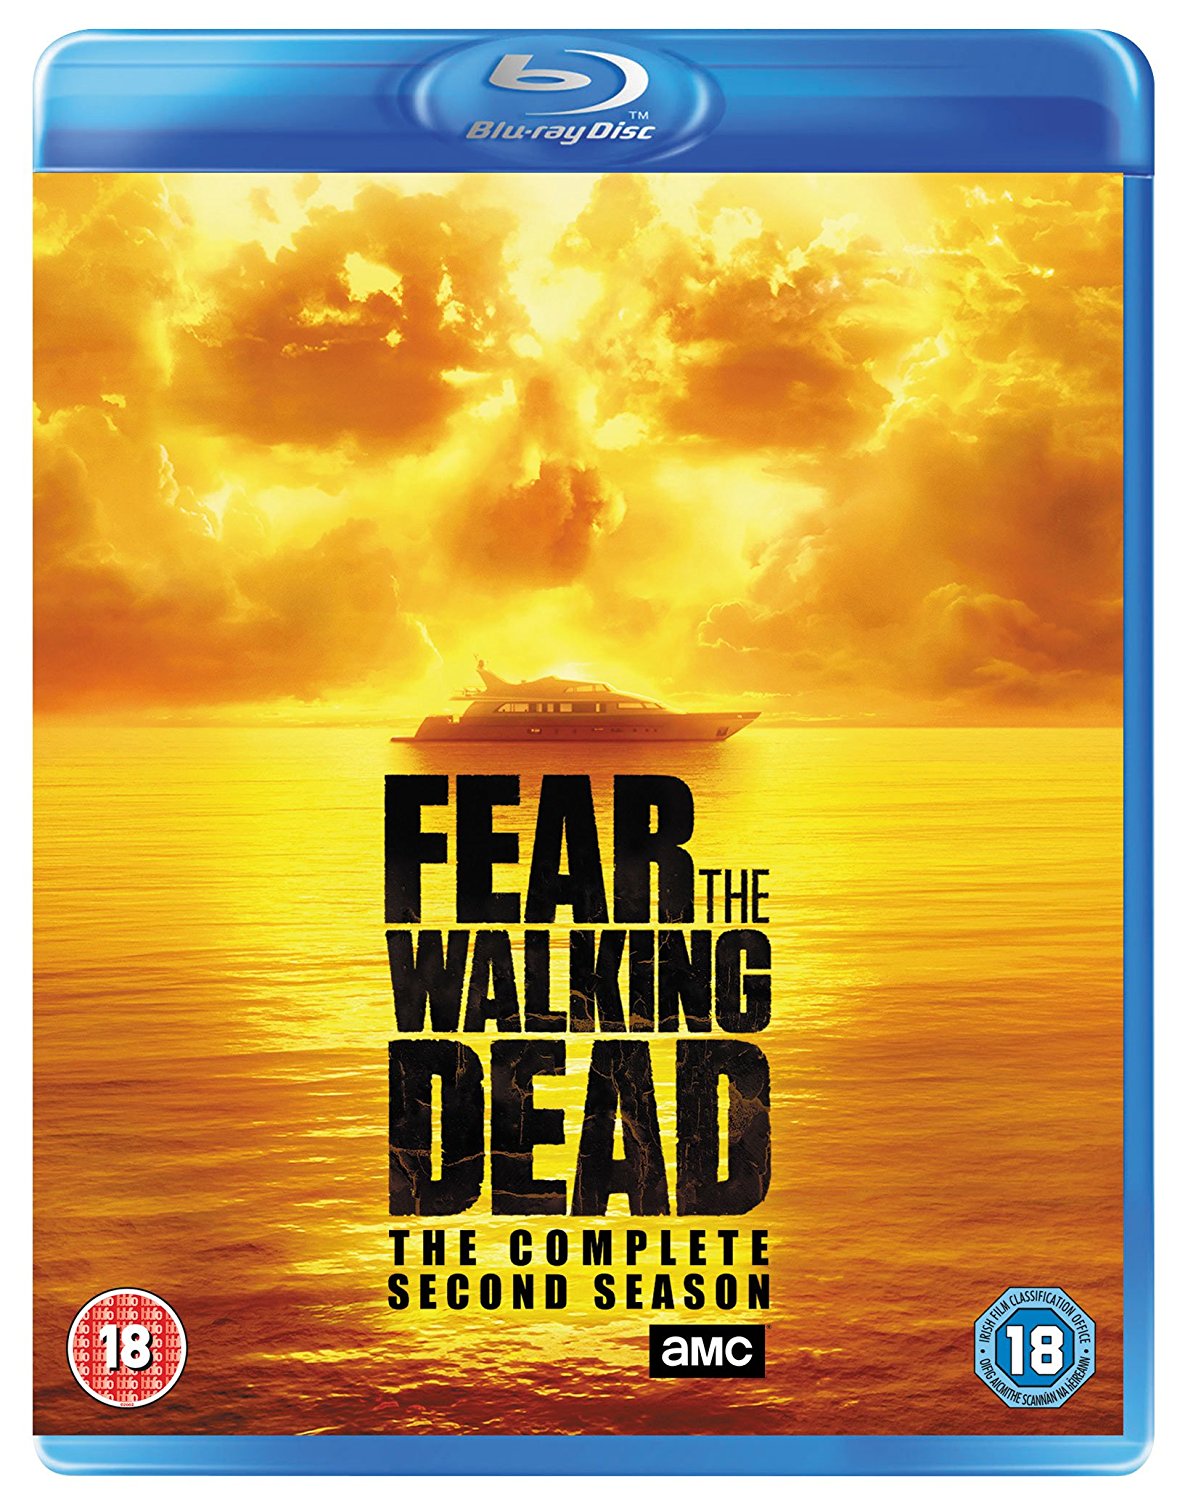 Fear The Walking Dead Season 2 Blu-ray review